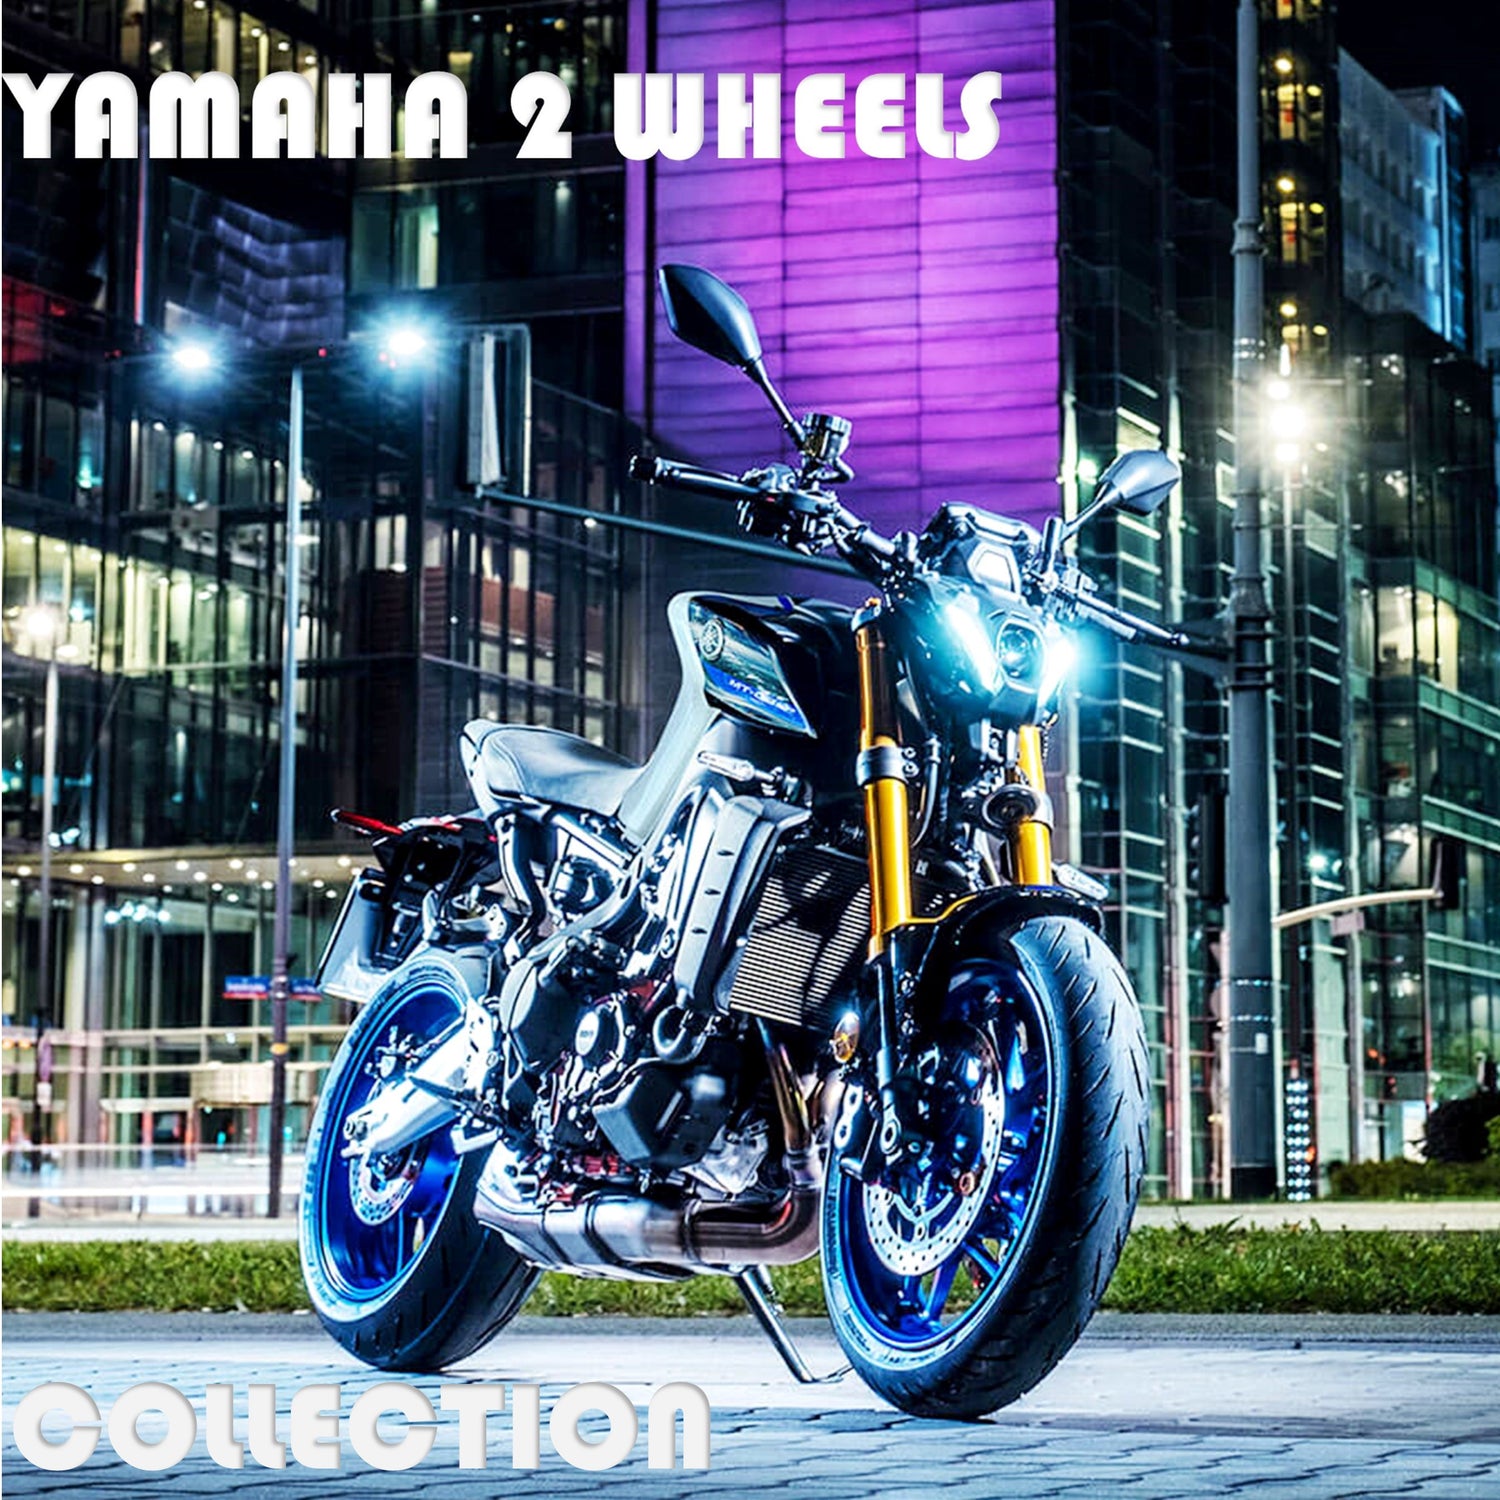 All Yamaha 2 Wheel